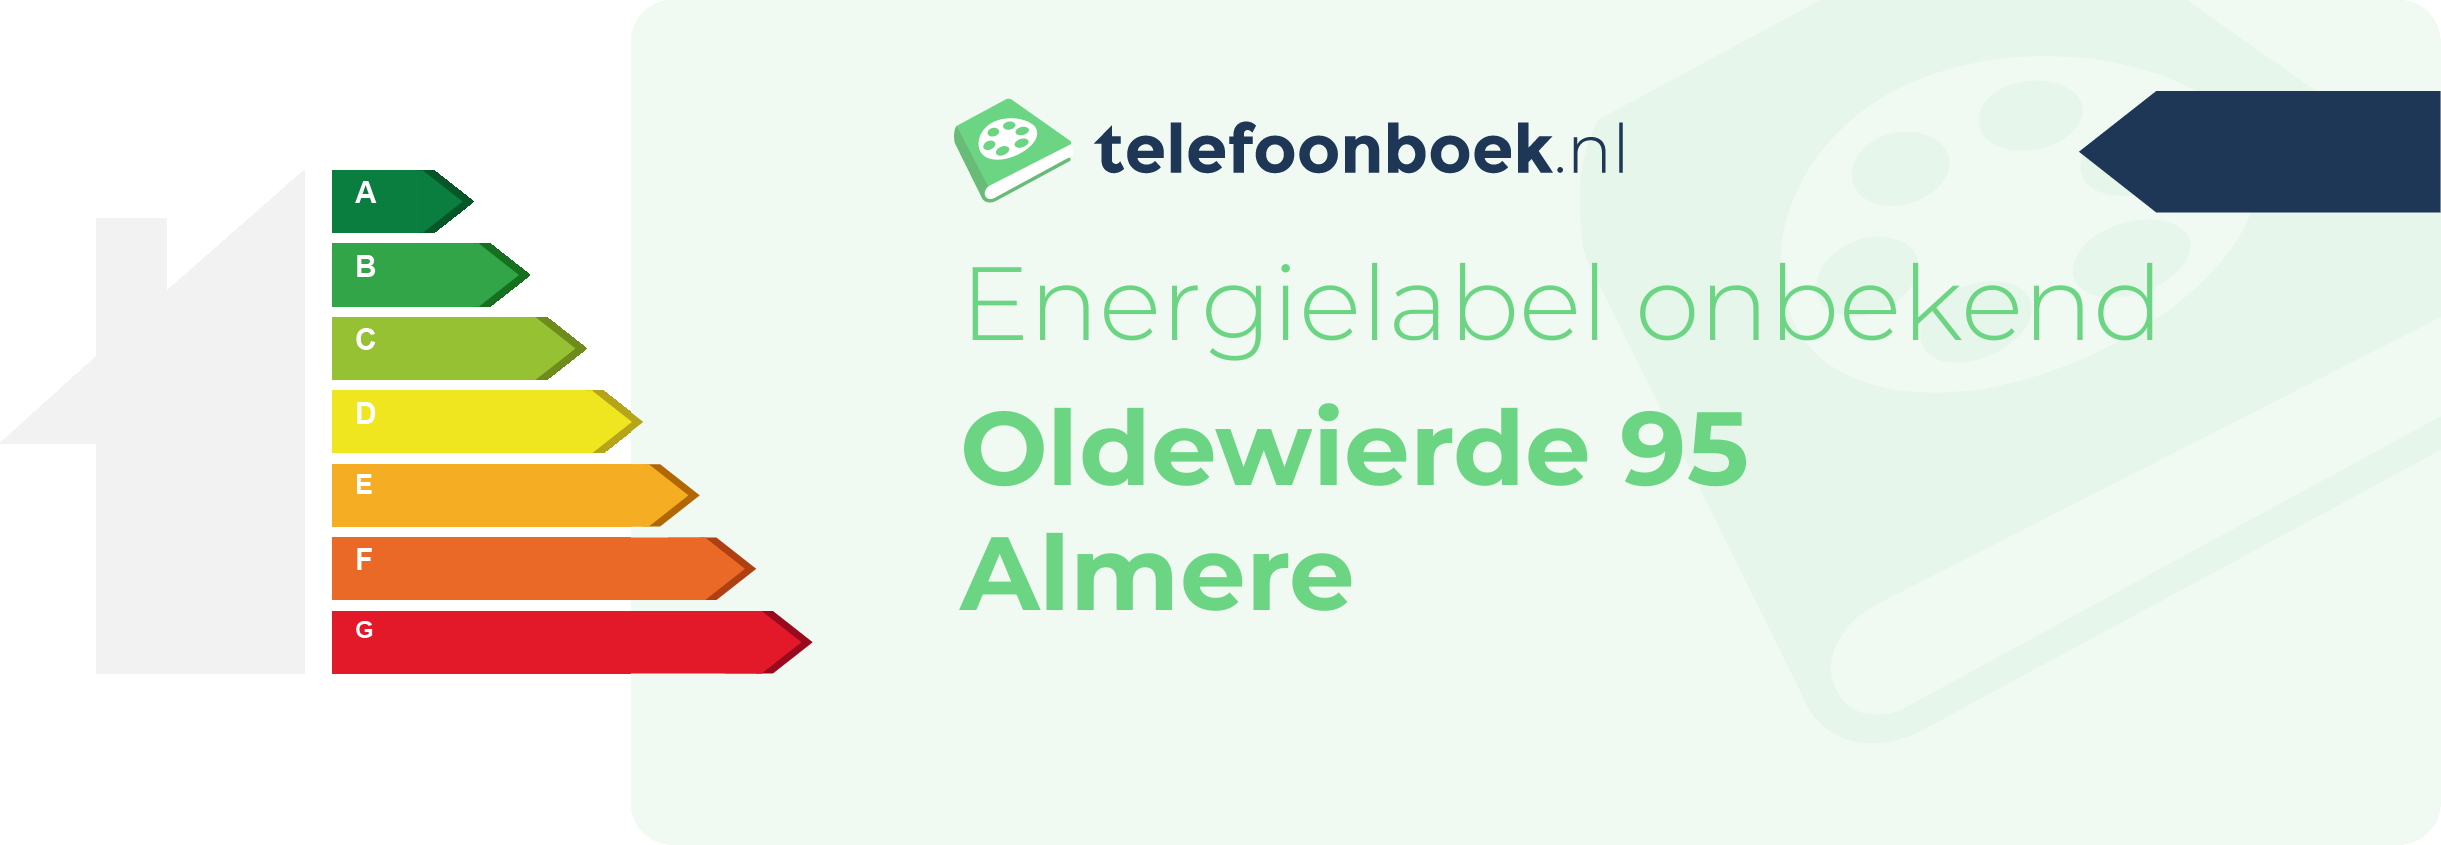 Energielabel Oldewierde 95 Almere